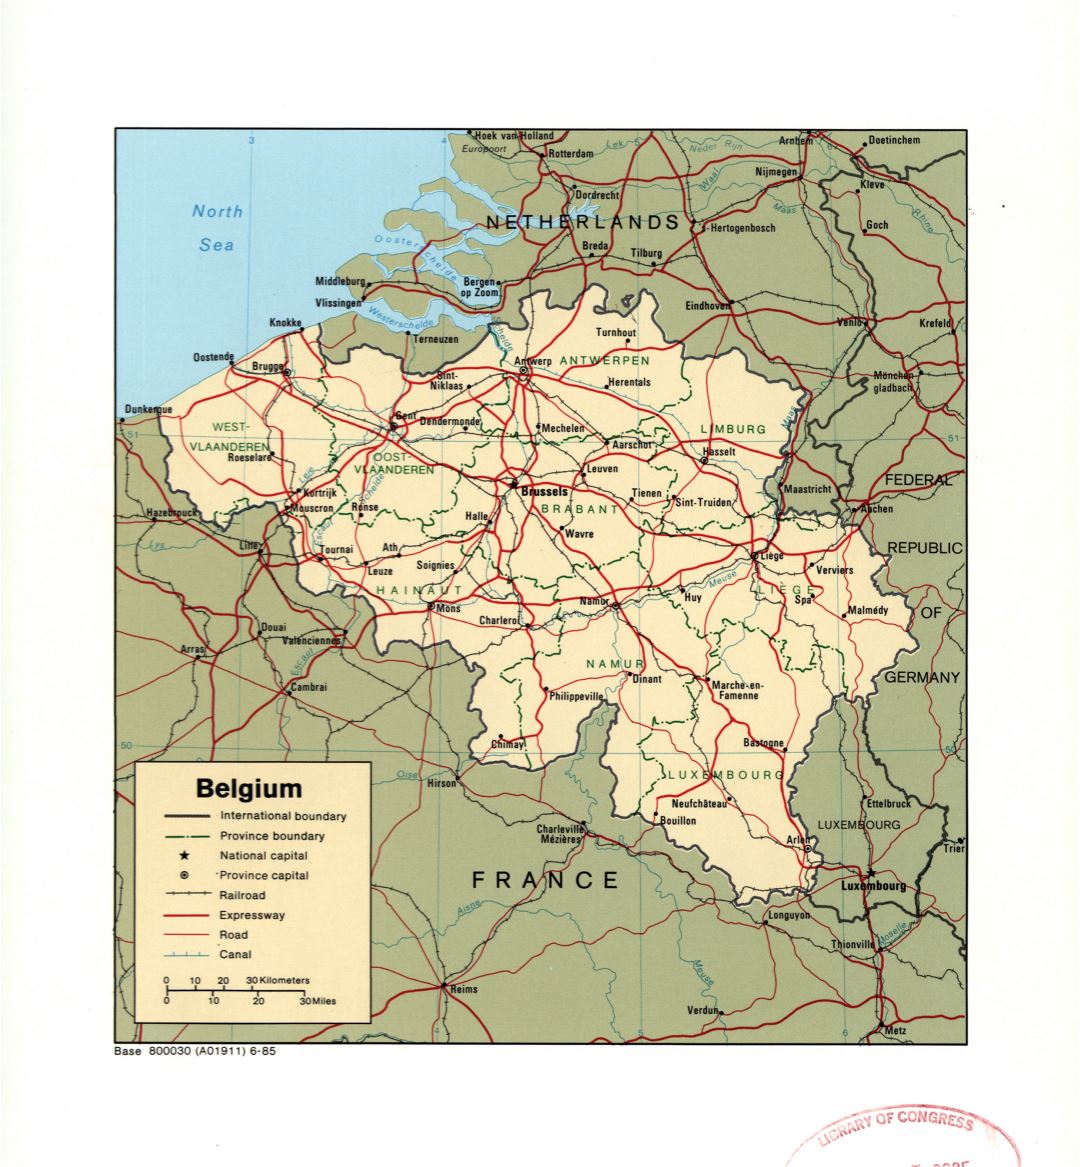 Gran detalle mapa político y administrativo de Bélgica con marcas de ciudades grandes, carreteras, ferrocarriles y canales - 1985